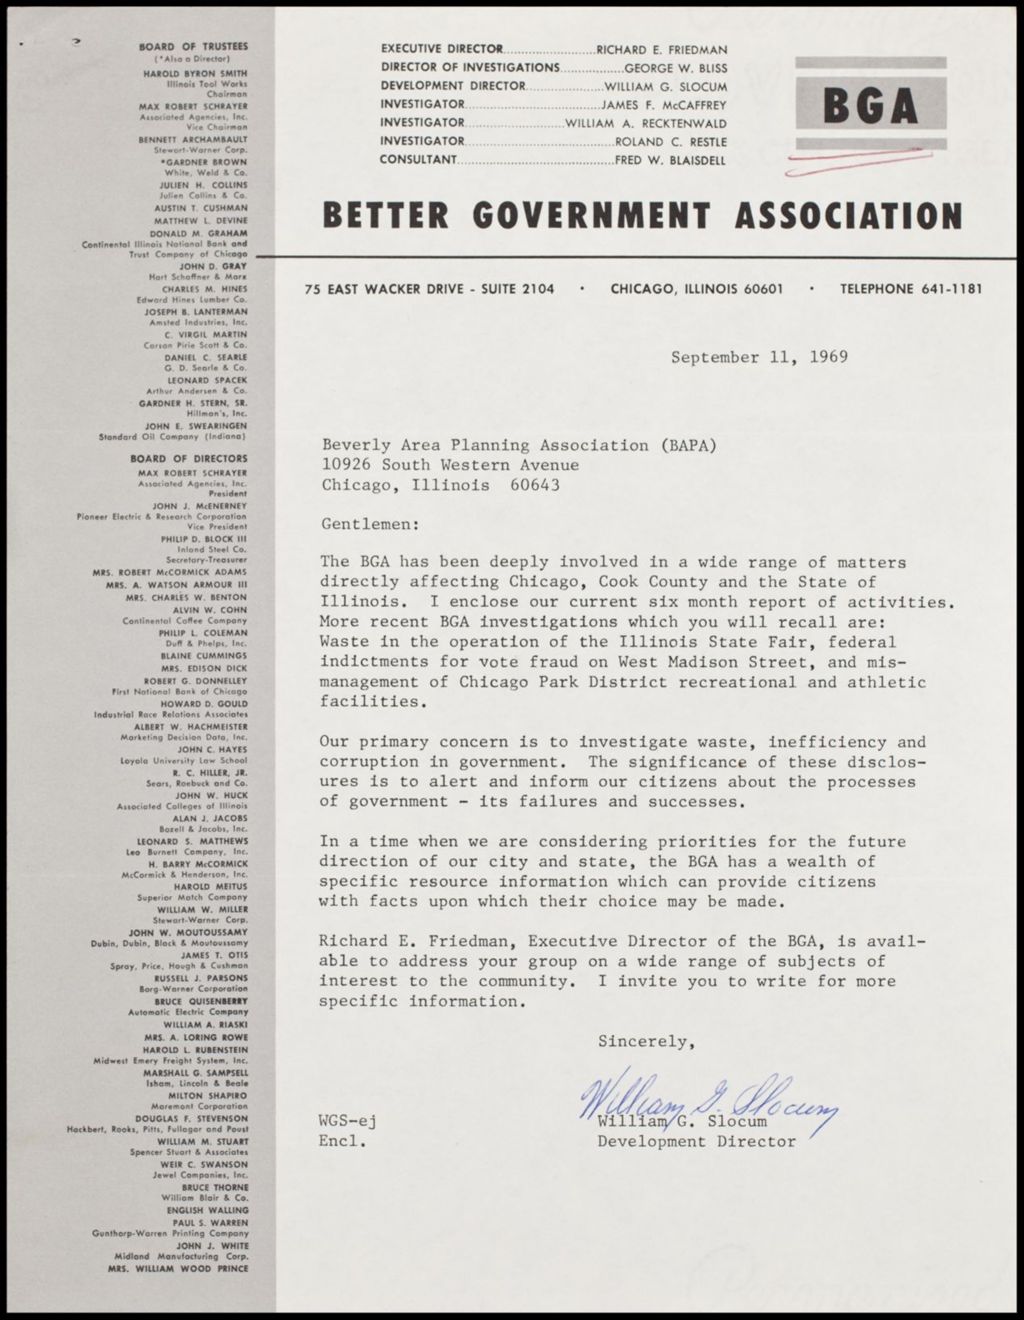 Miniature of Better Government Association, 1969 (Folder 5)